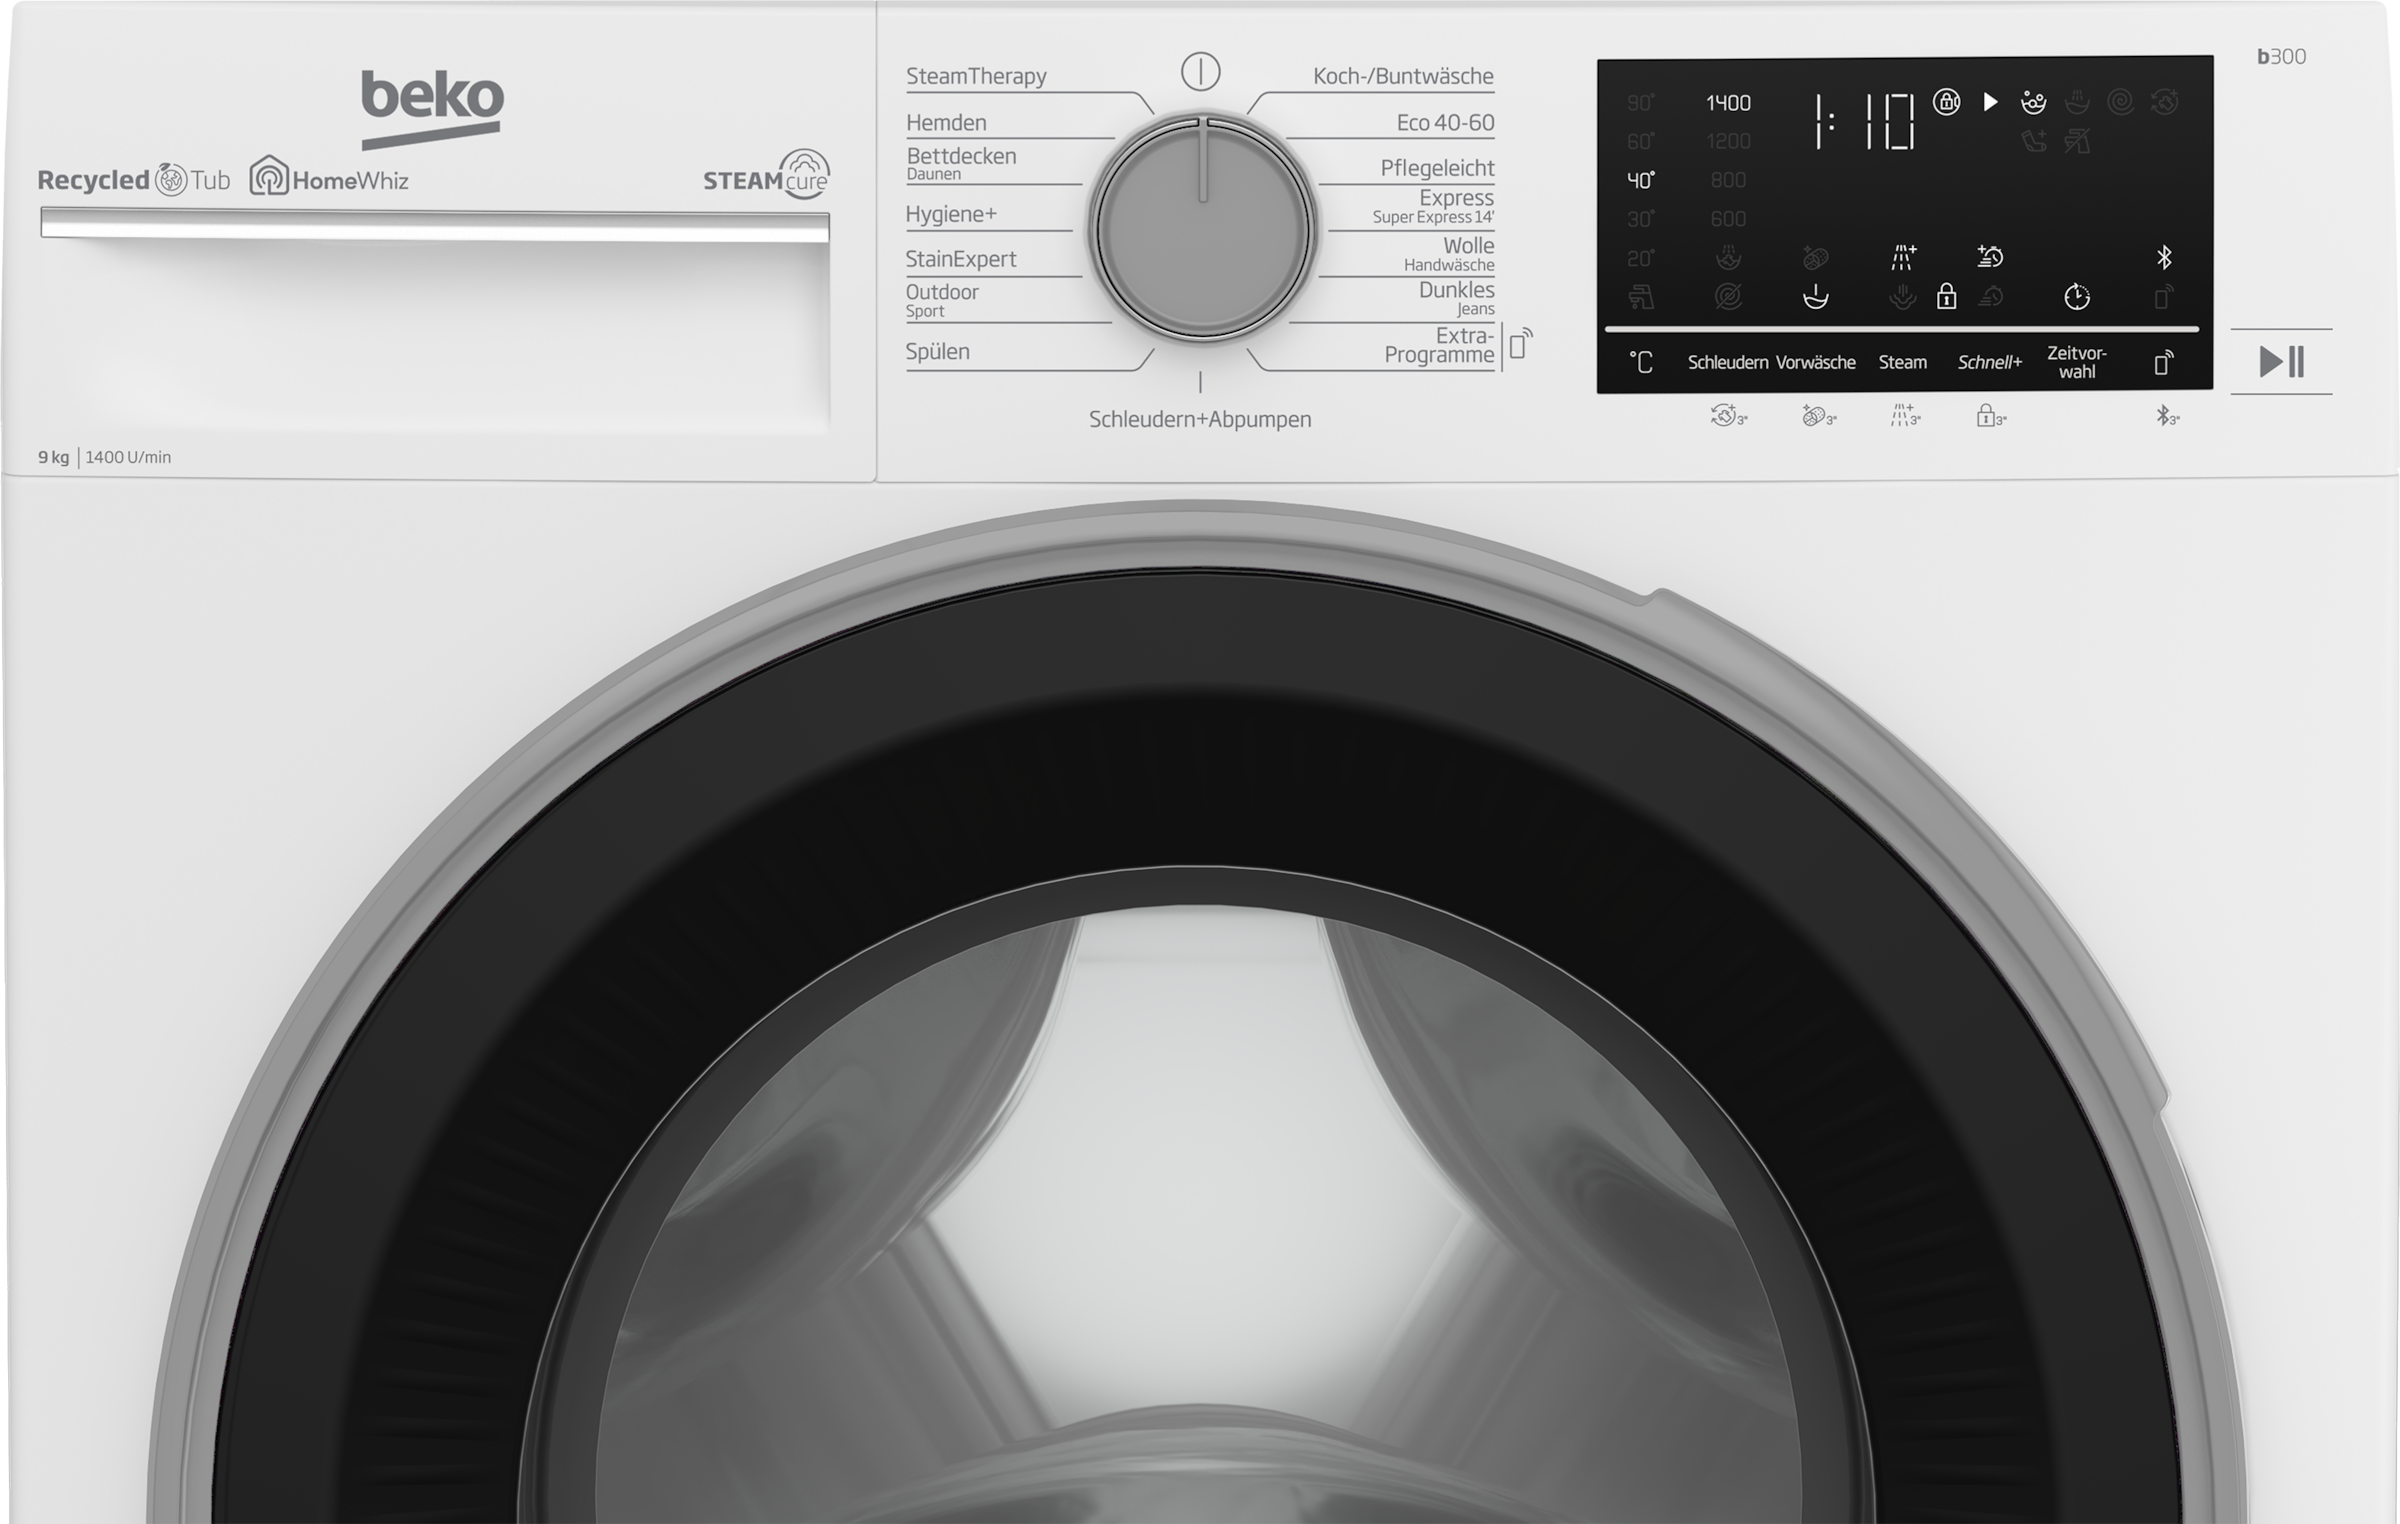 BEKO Waschmaschine, b300, B3WFU59415W2, online allergenfrei 99% 9 kaufen U/min, kg, SteamCure 1400 